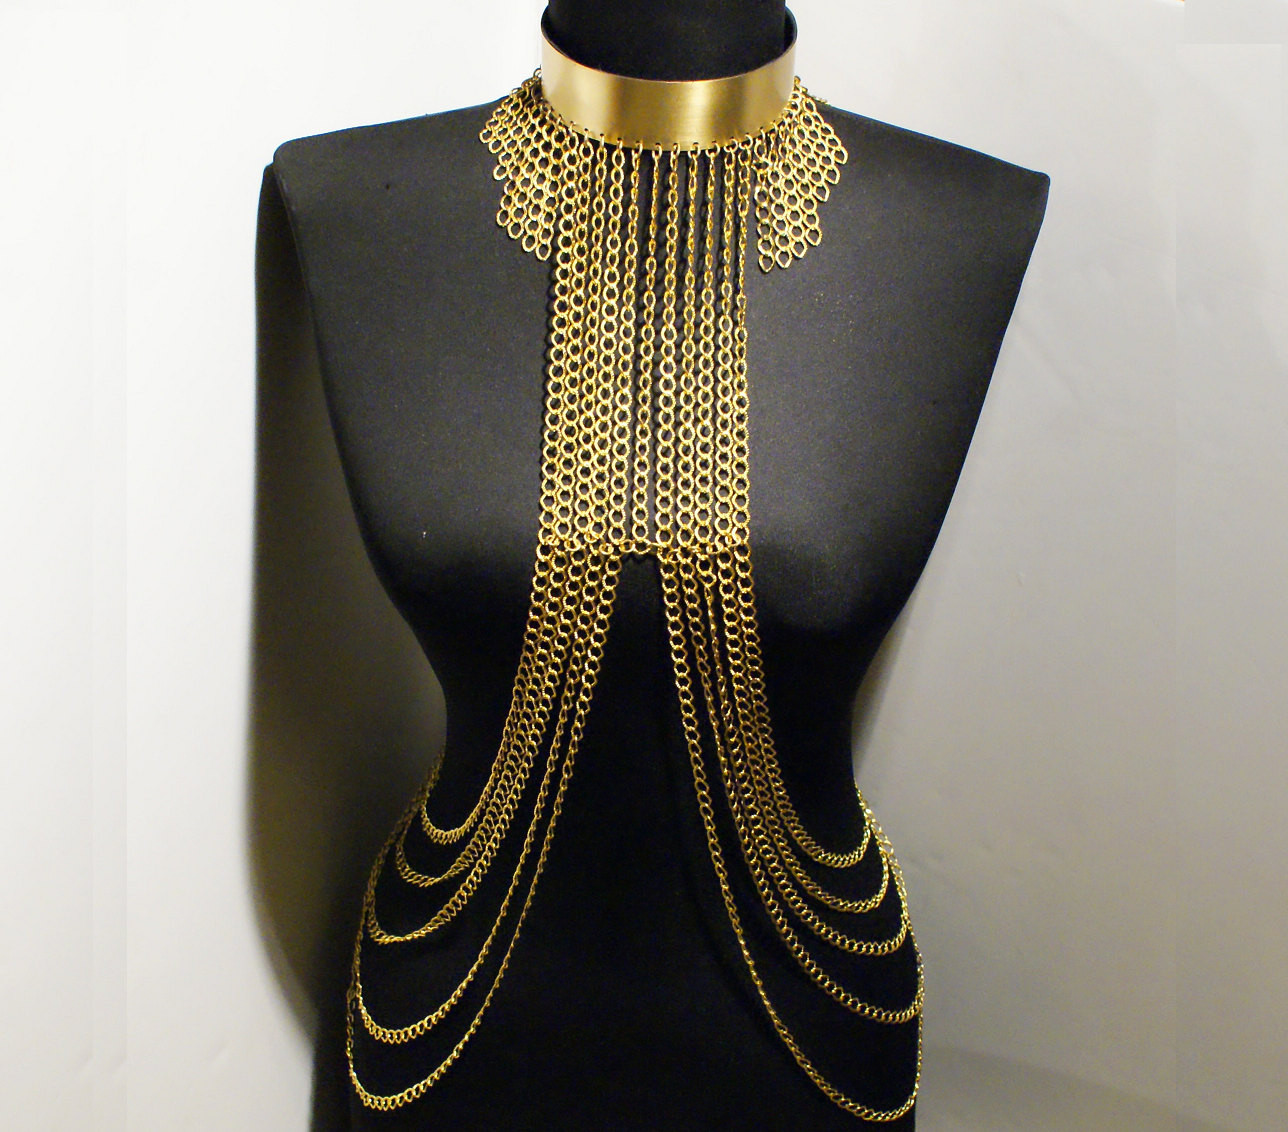 Body Jewelry Chains
 gold body chain body jewelry chain by BeyhanAkman on Etsy